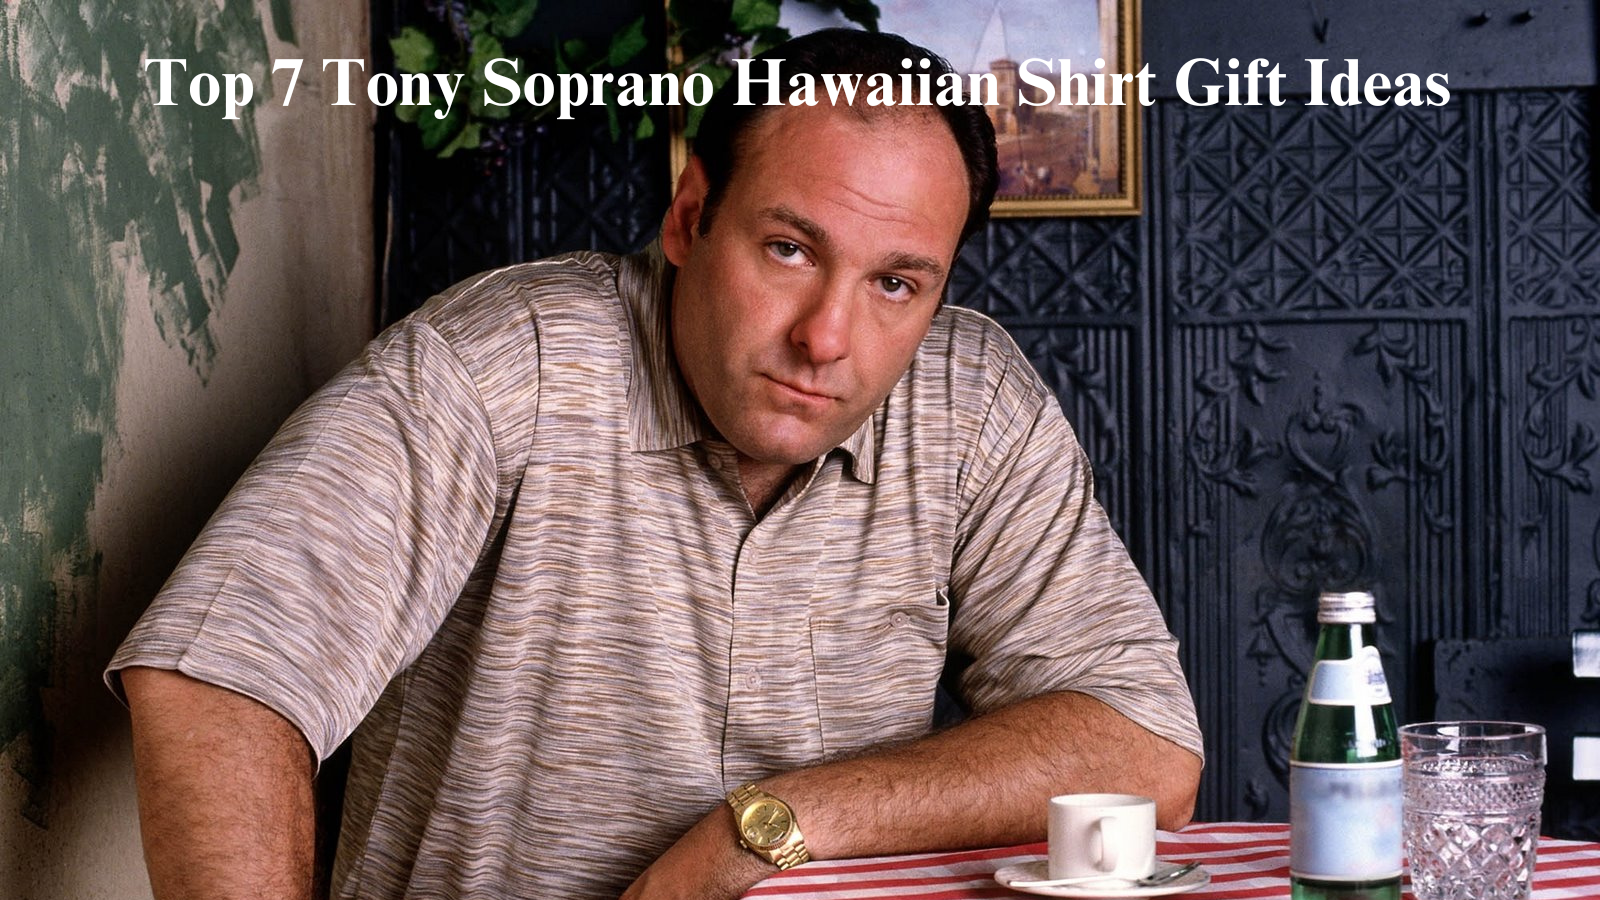 Top 7 Tony Soprano Hawaiian Shirt Gift Ideas  